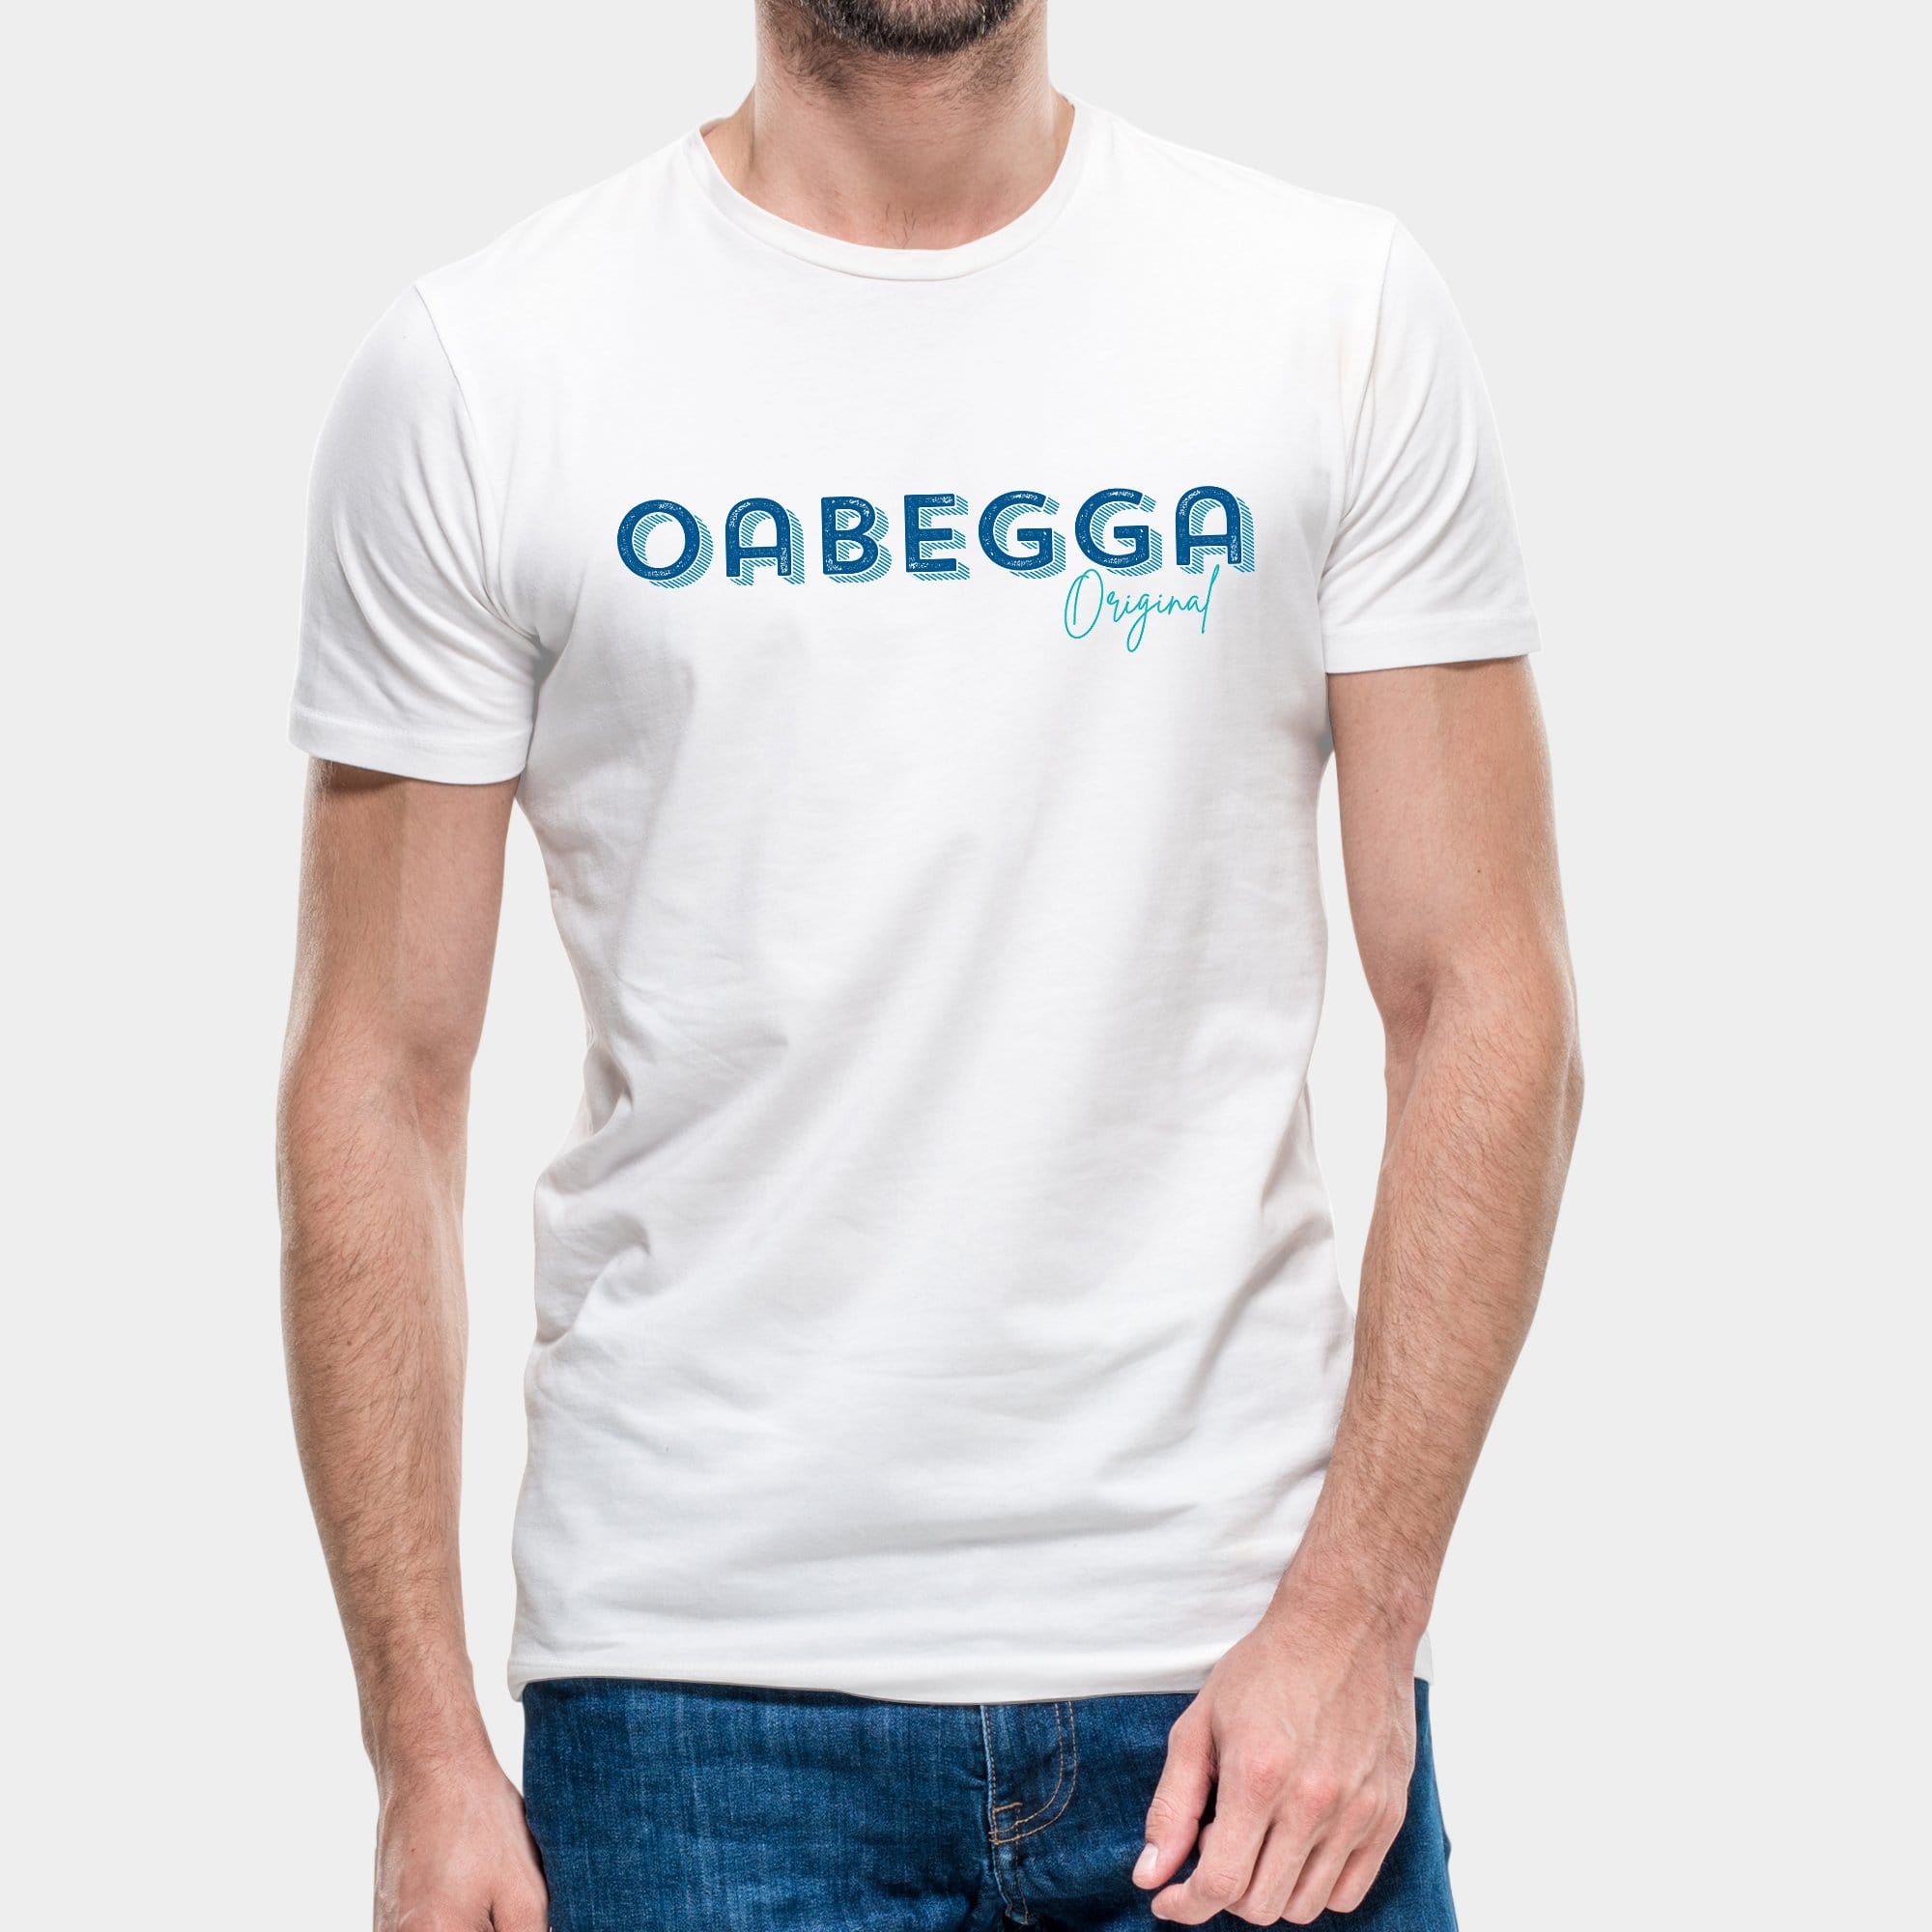 Projekt Herren-T-Shirt "Oabegga Original" S / weiß - aus nachhaltiger und fairer Produktion